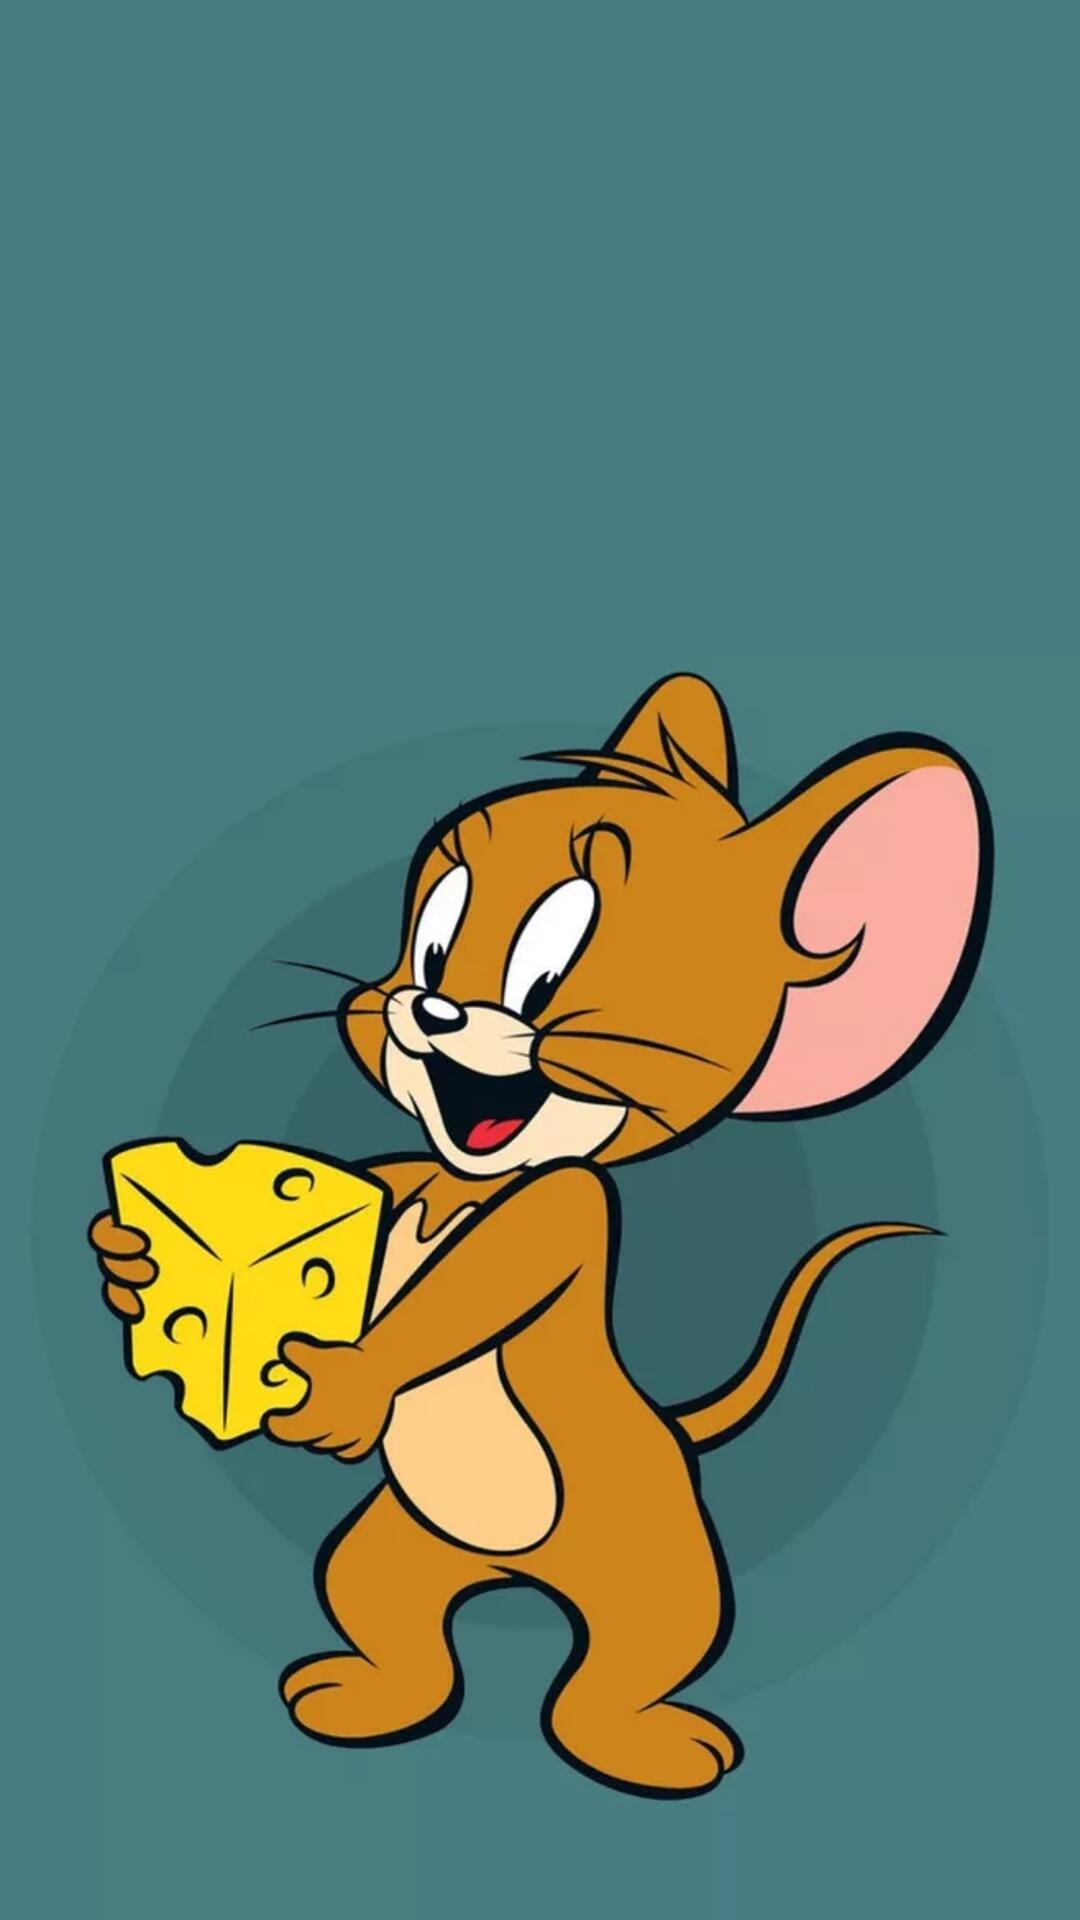 《猫和老鼠》里的小老鼠JERRY可爱手机壁纸图片第2张壁纸